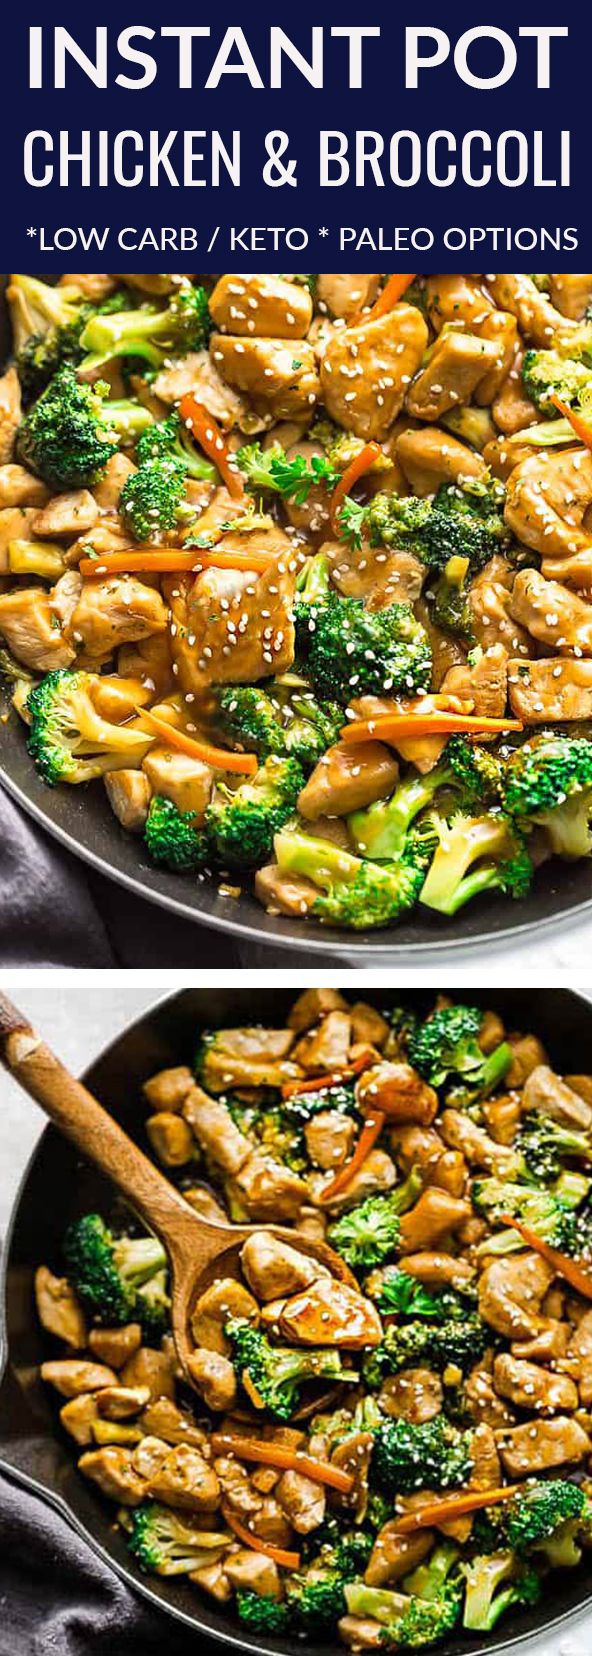 Instapot Keto Chicken And Broccoli Recipes Instant Pot Chicken and Broccoli Stir Fry a popular